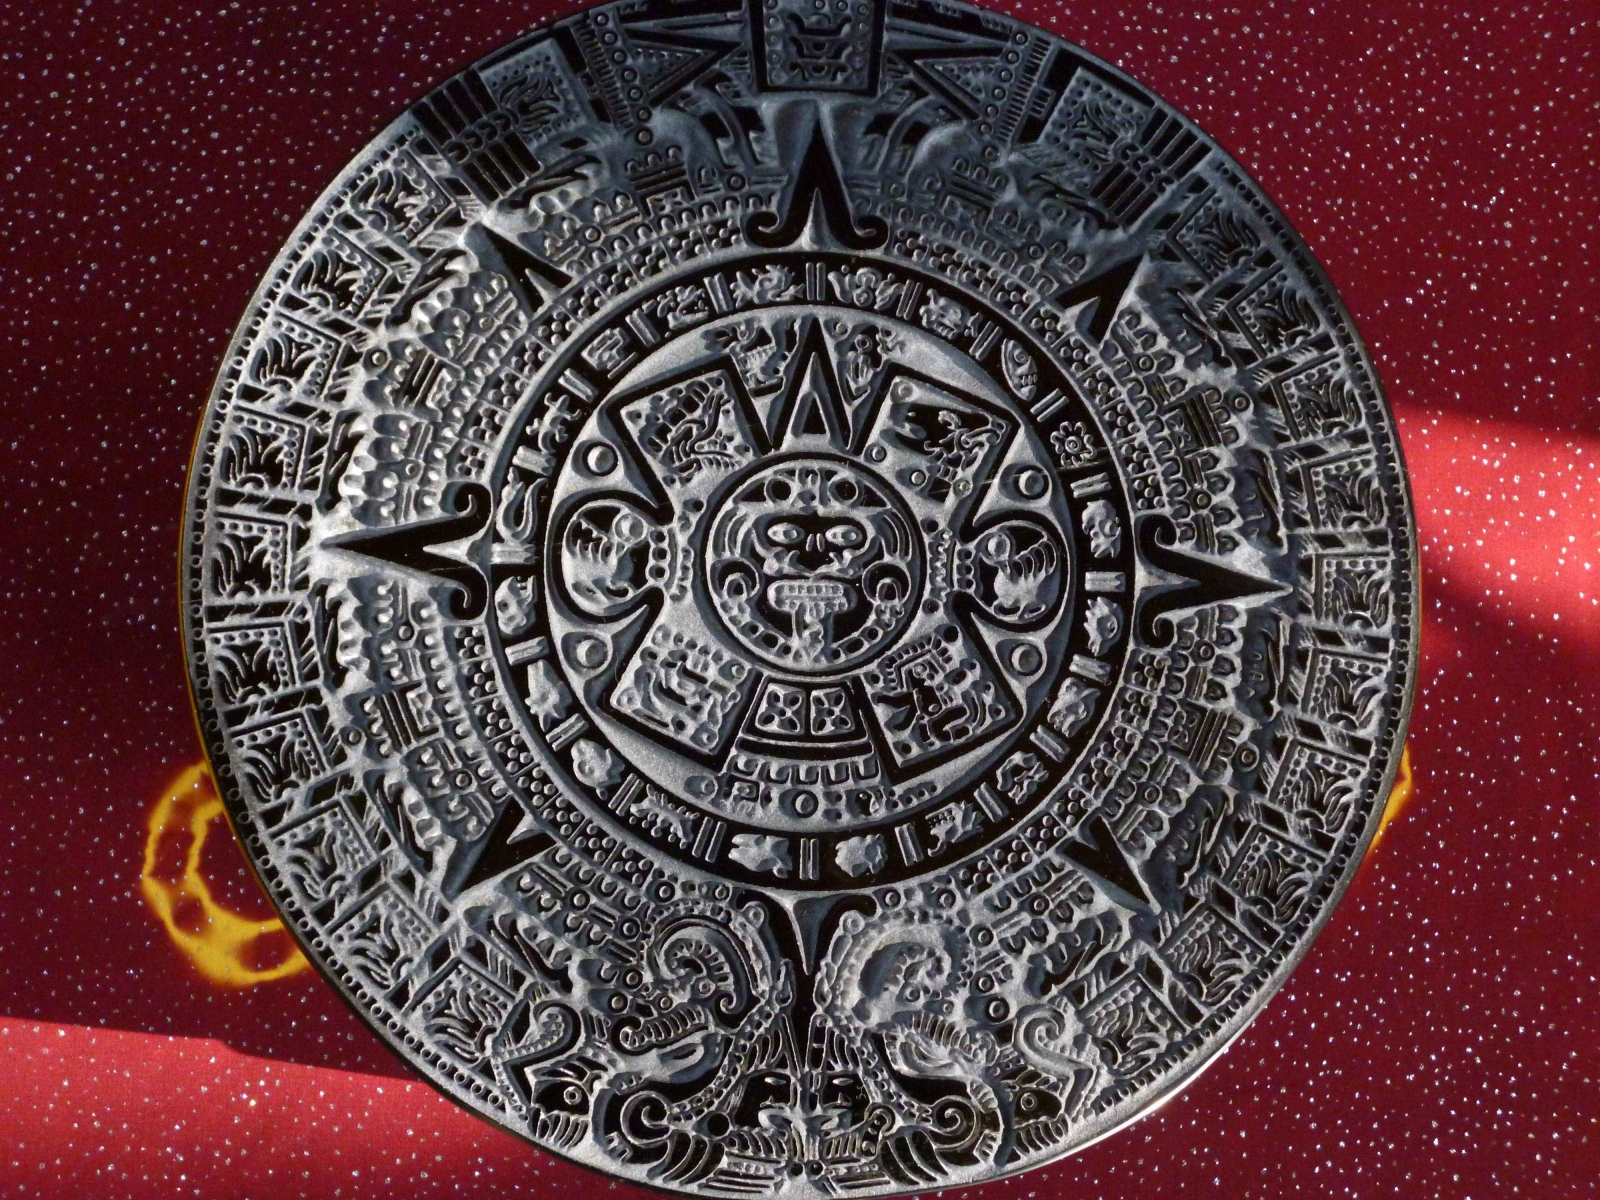 Calendrier aztèque gravure sur pierre obsidienne dorée 